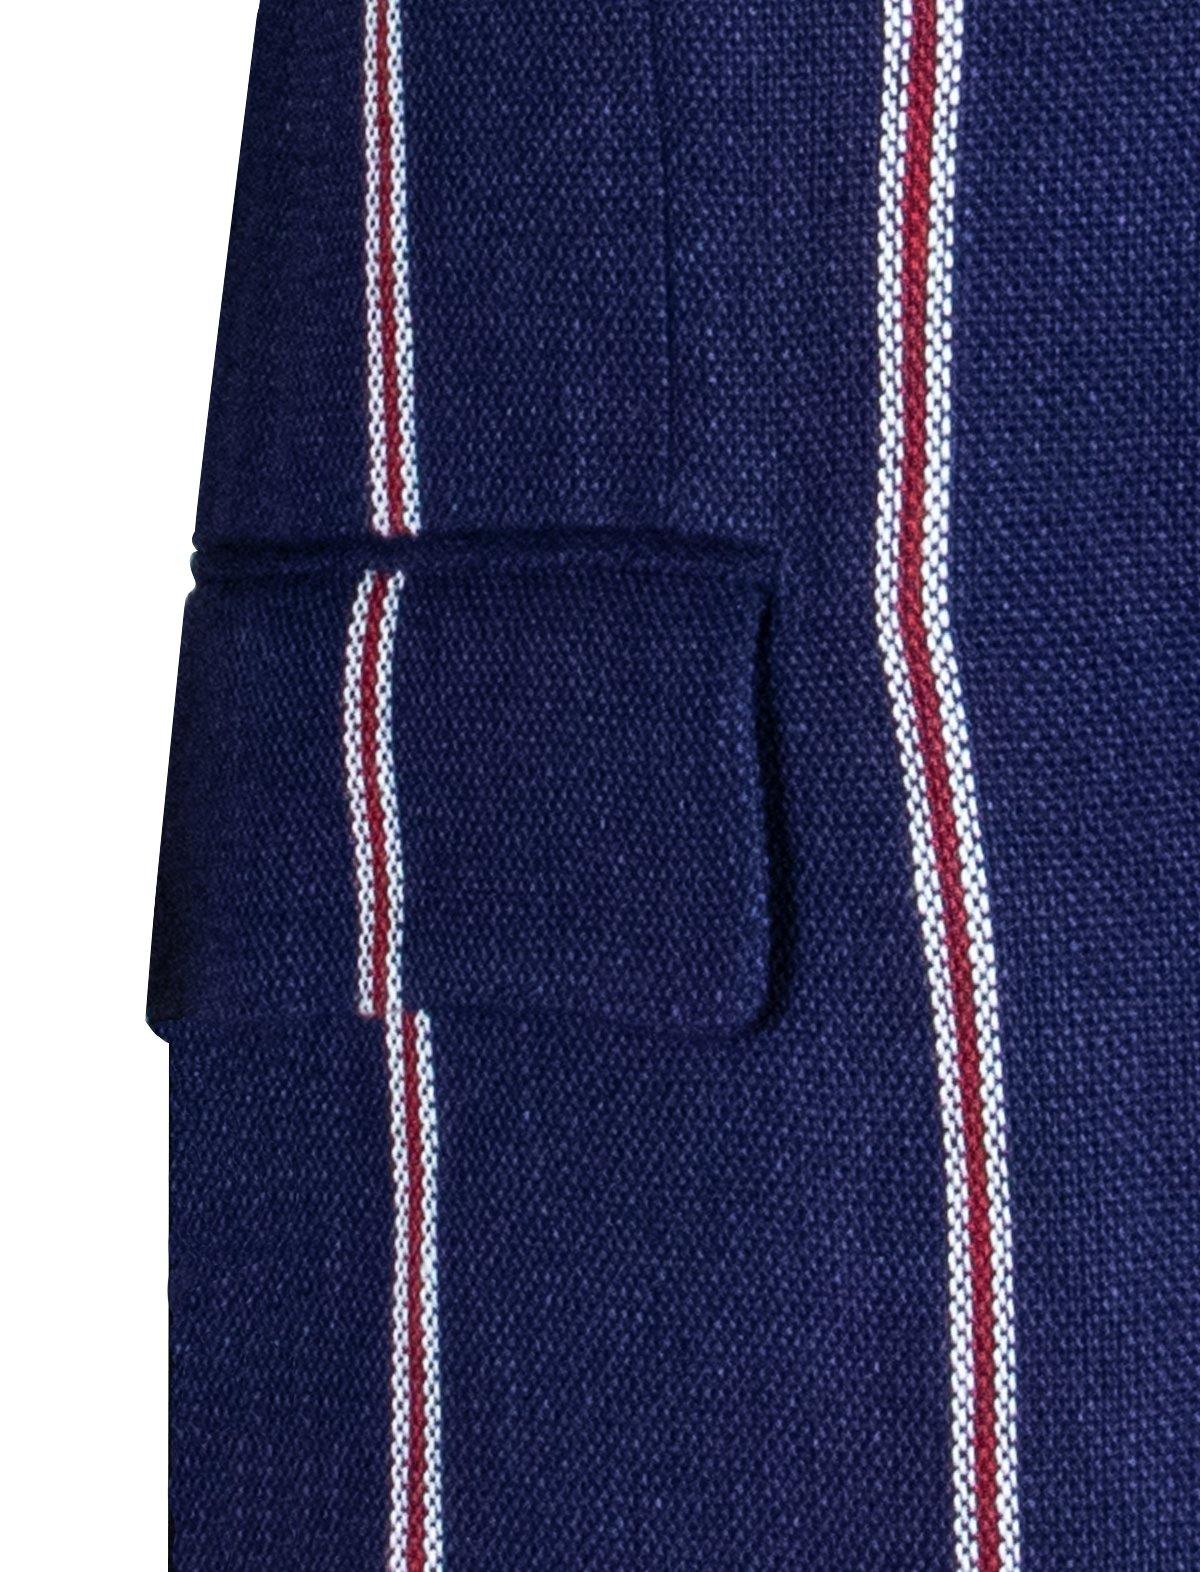 GABRIELE PASINI 2-Piece Linen Suit in Navy Contrasting Stripes | CLOSET Singapore